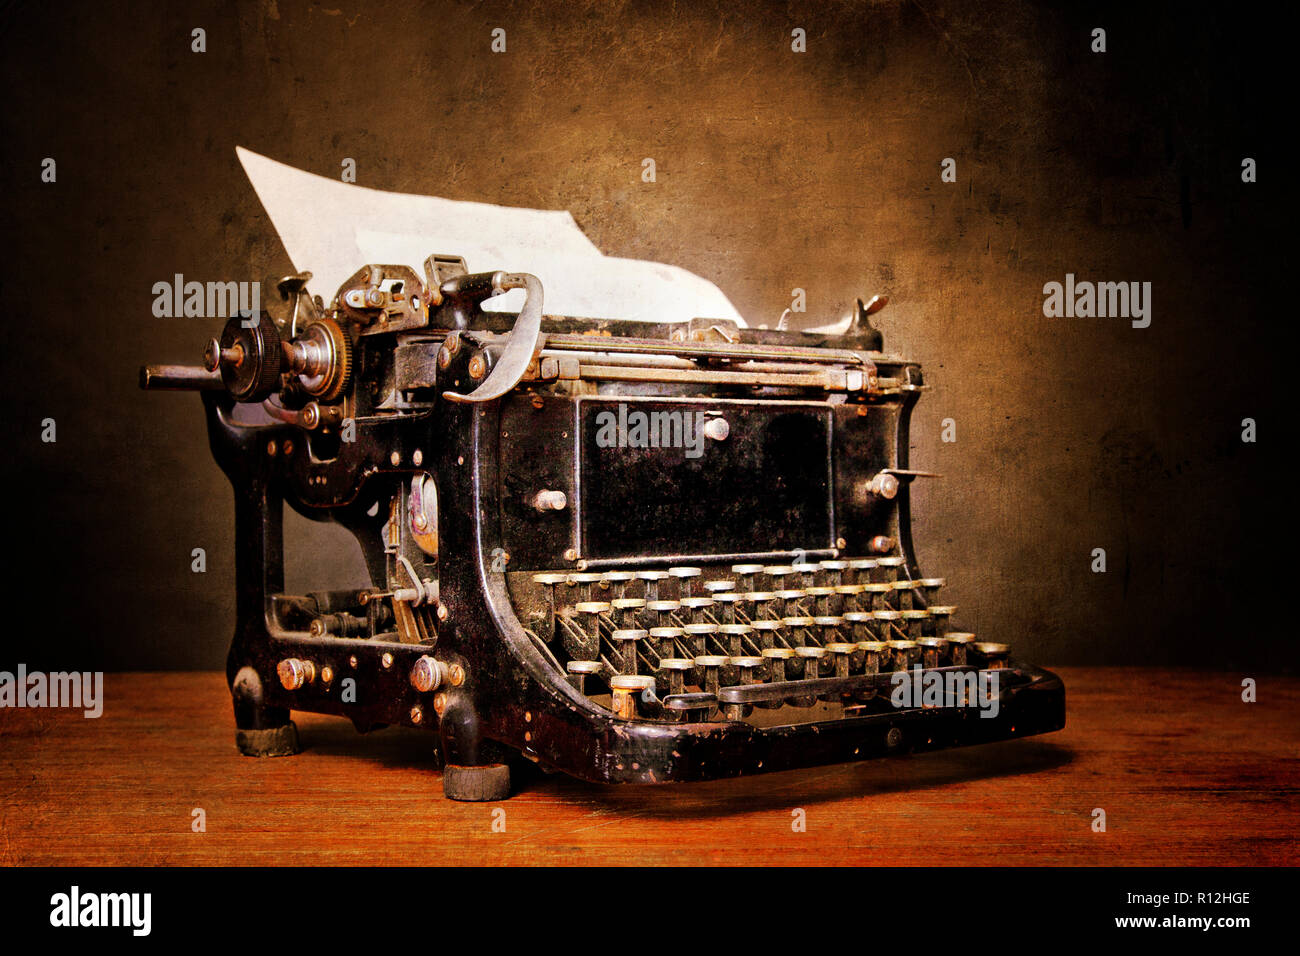 Vieille machine à écrire sur une table Banque D'Images